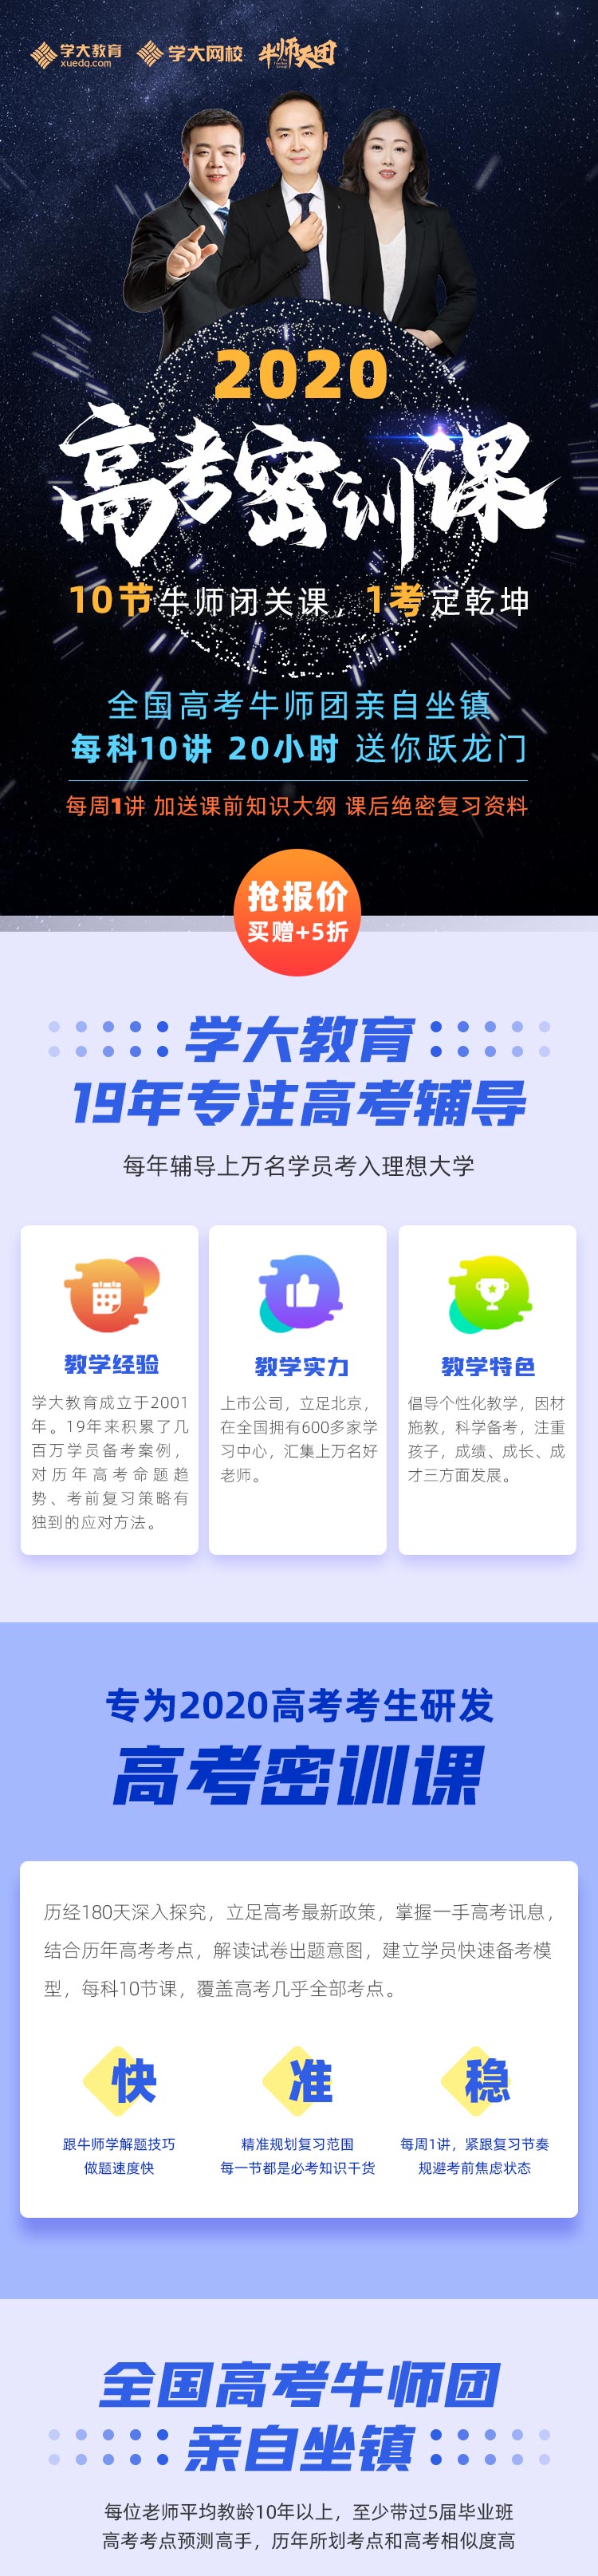 https://xdo-storage.oss-cn-beijing.aliyuncs.com/2020/03/09/44LpXdgTwQzk7mJK3e13Ox5cAnsZ1JJ8dUuUywdq.jpeg